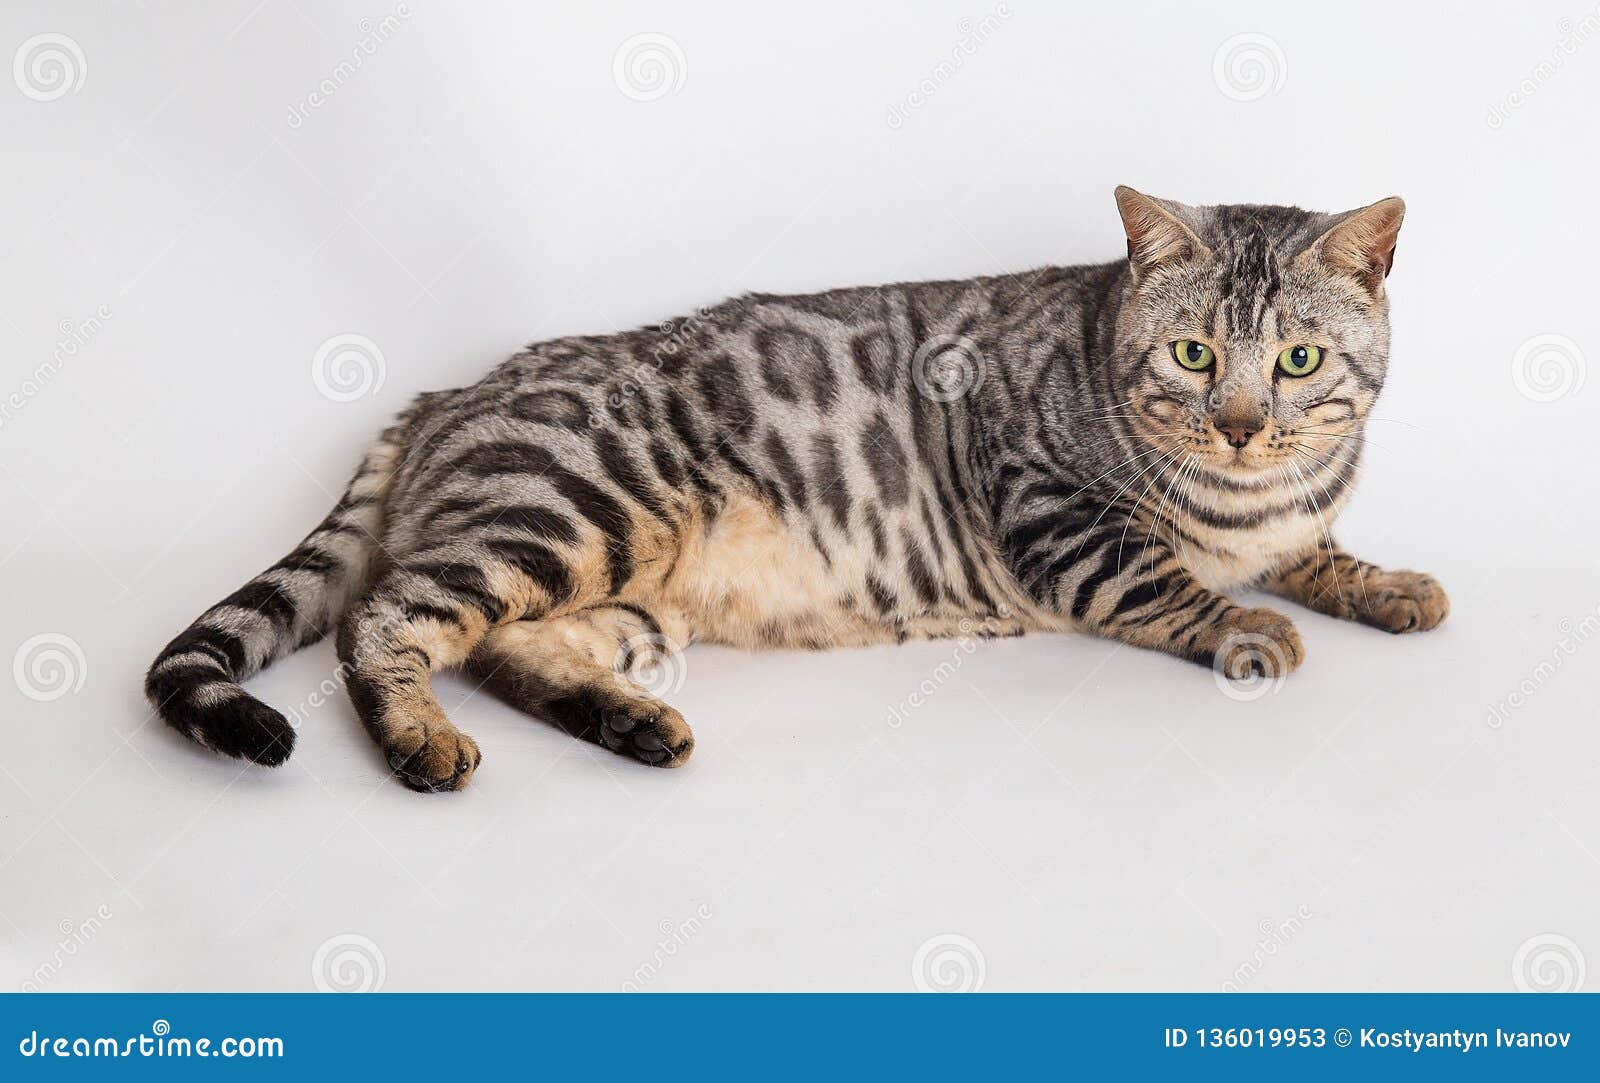 bengal cat photo in studio